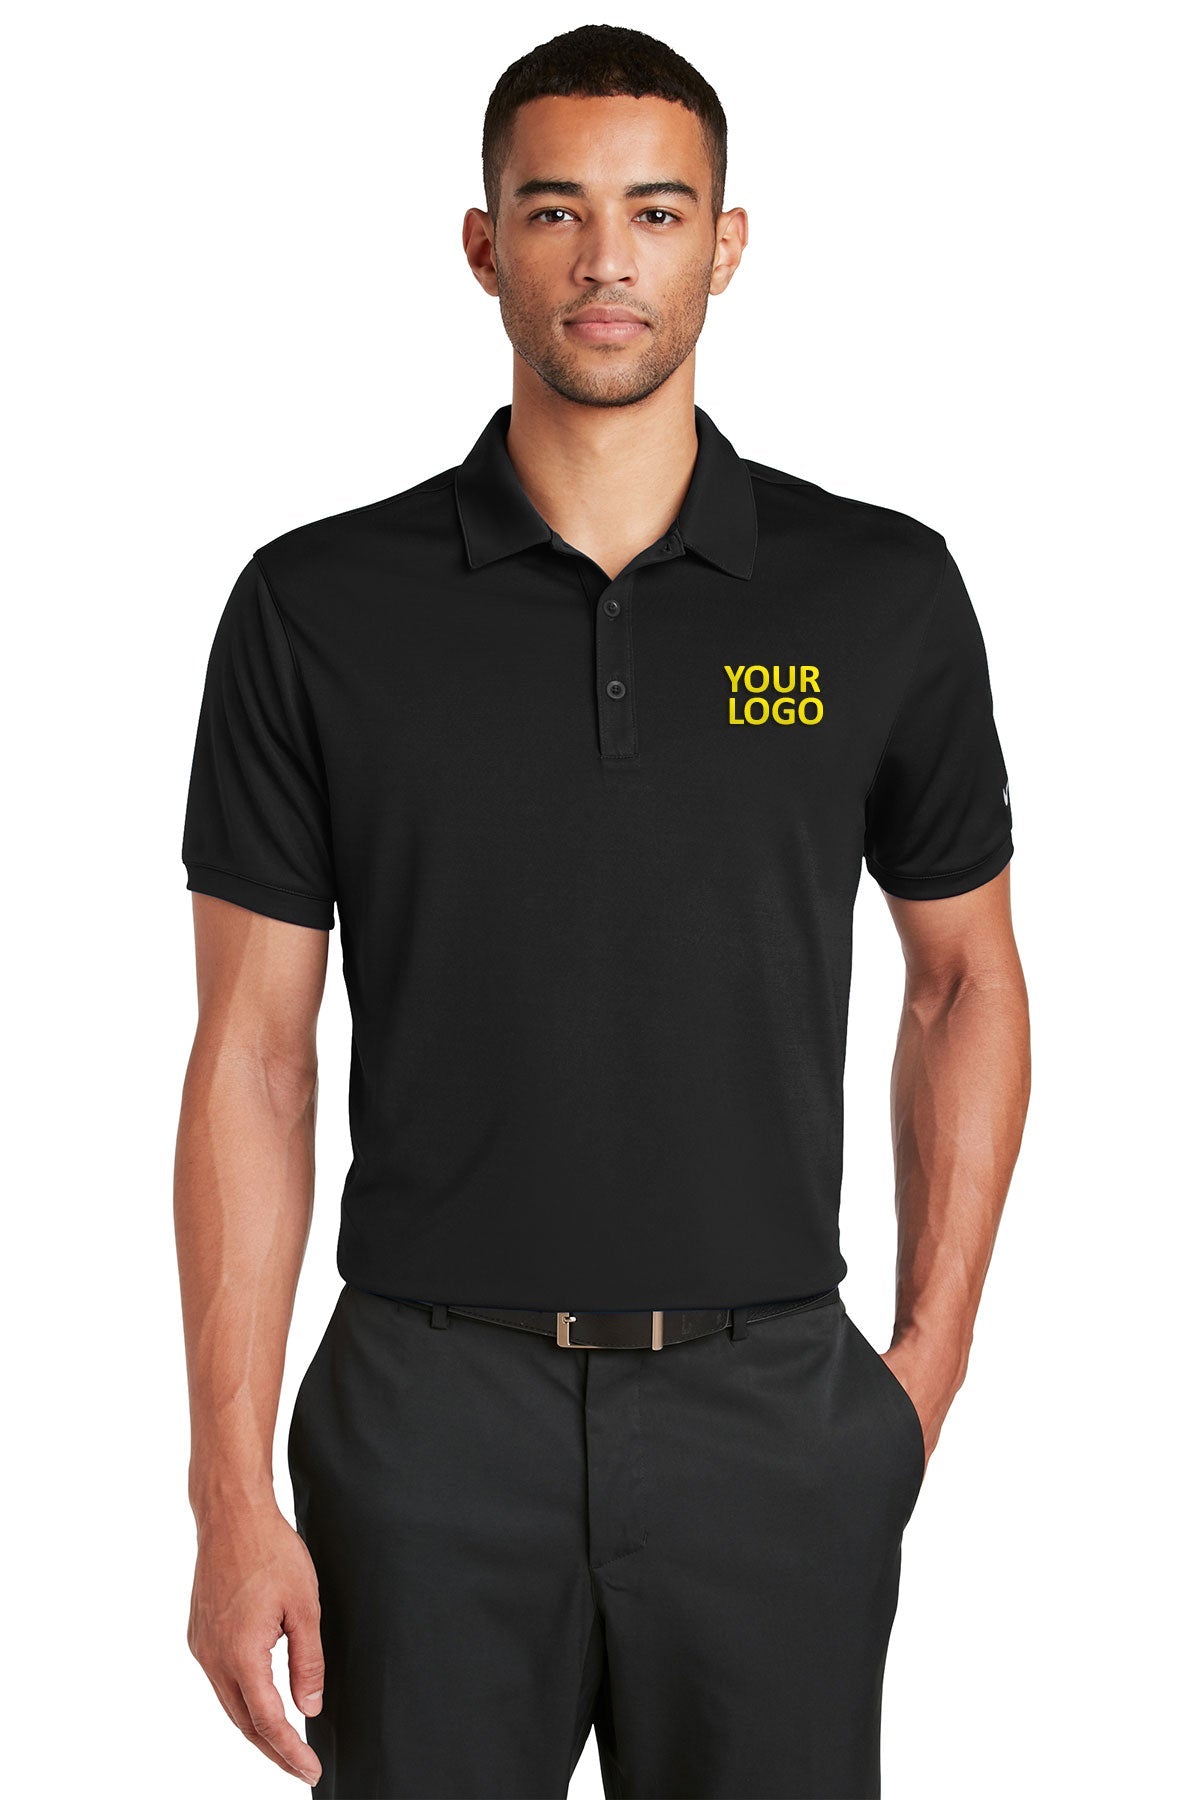 nike black 799802 quality polo shirts with company logo